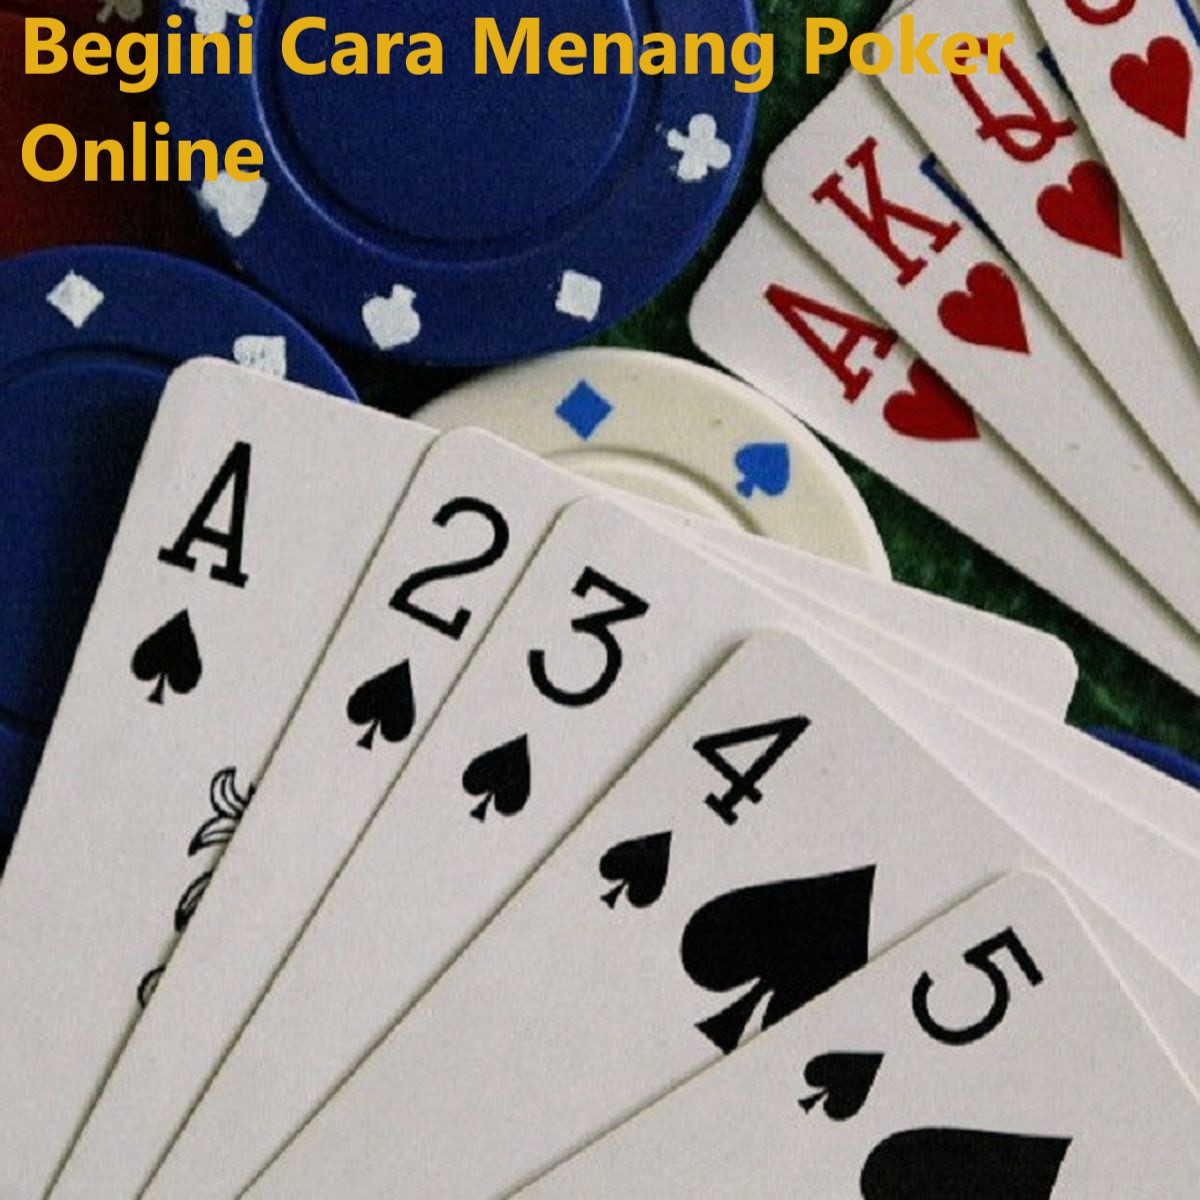 Begini Cara Menang Poker Online